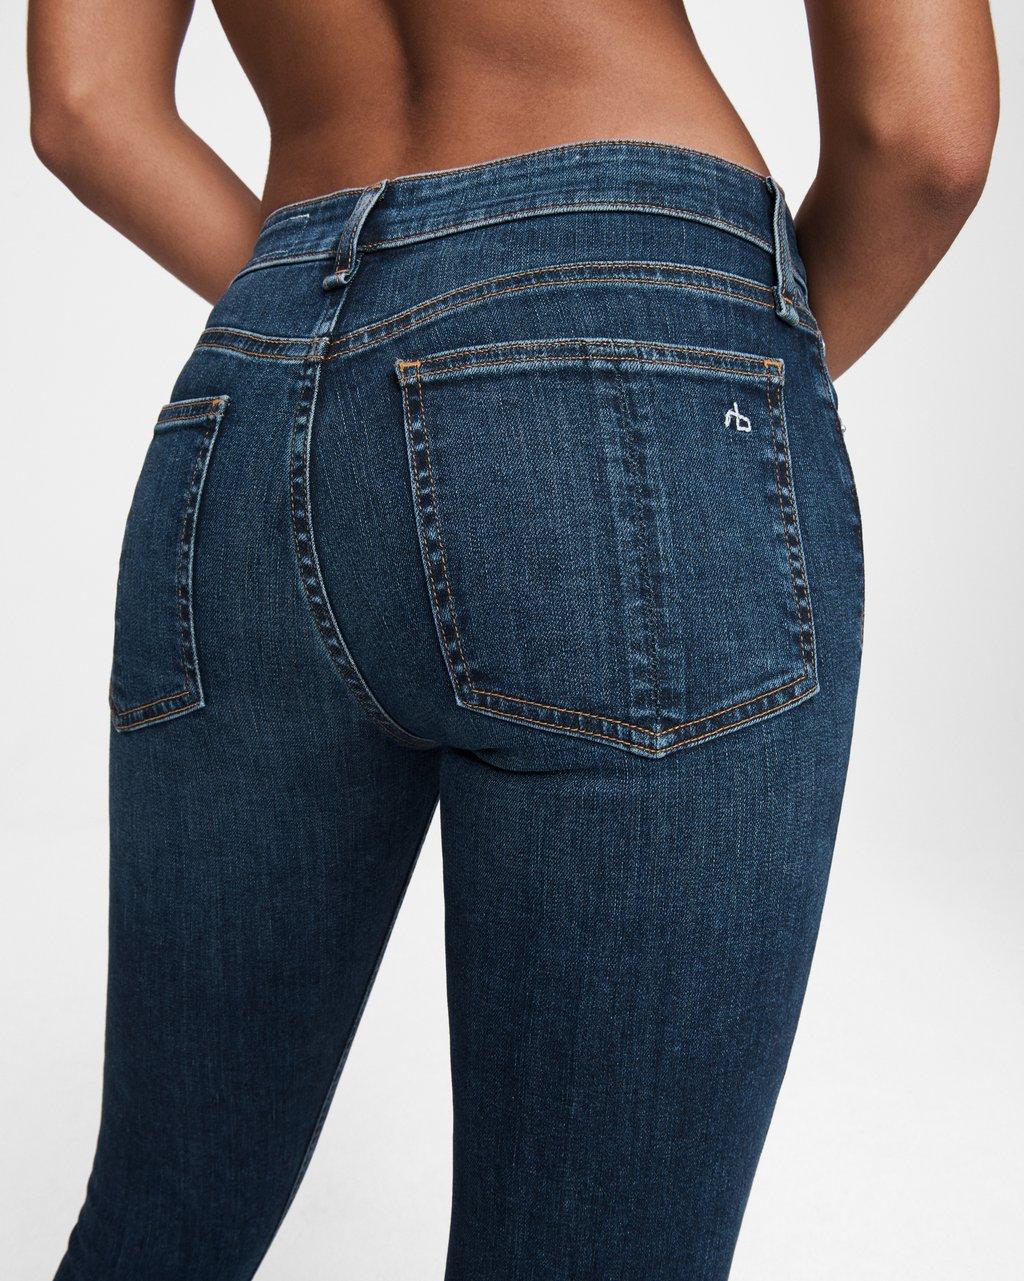 czech tight european jeans xxx pics